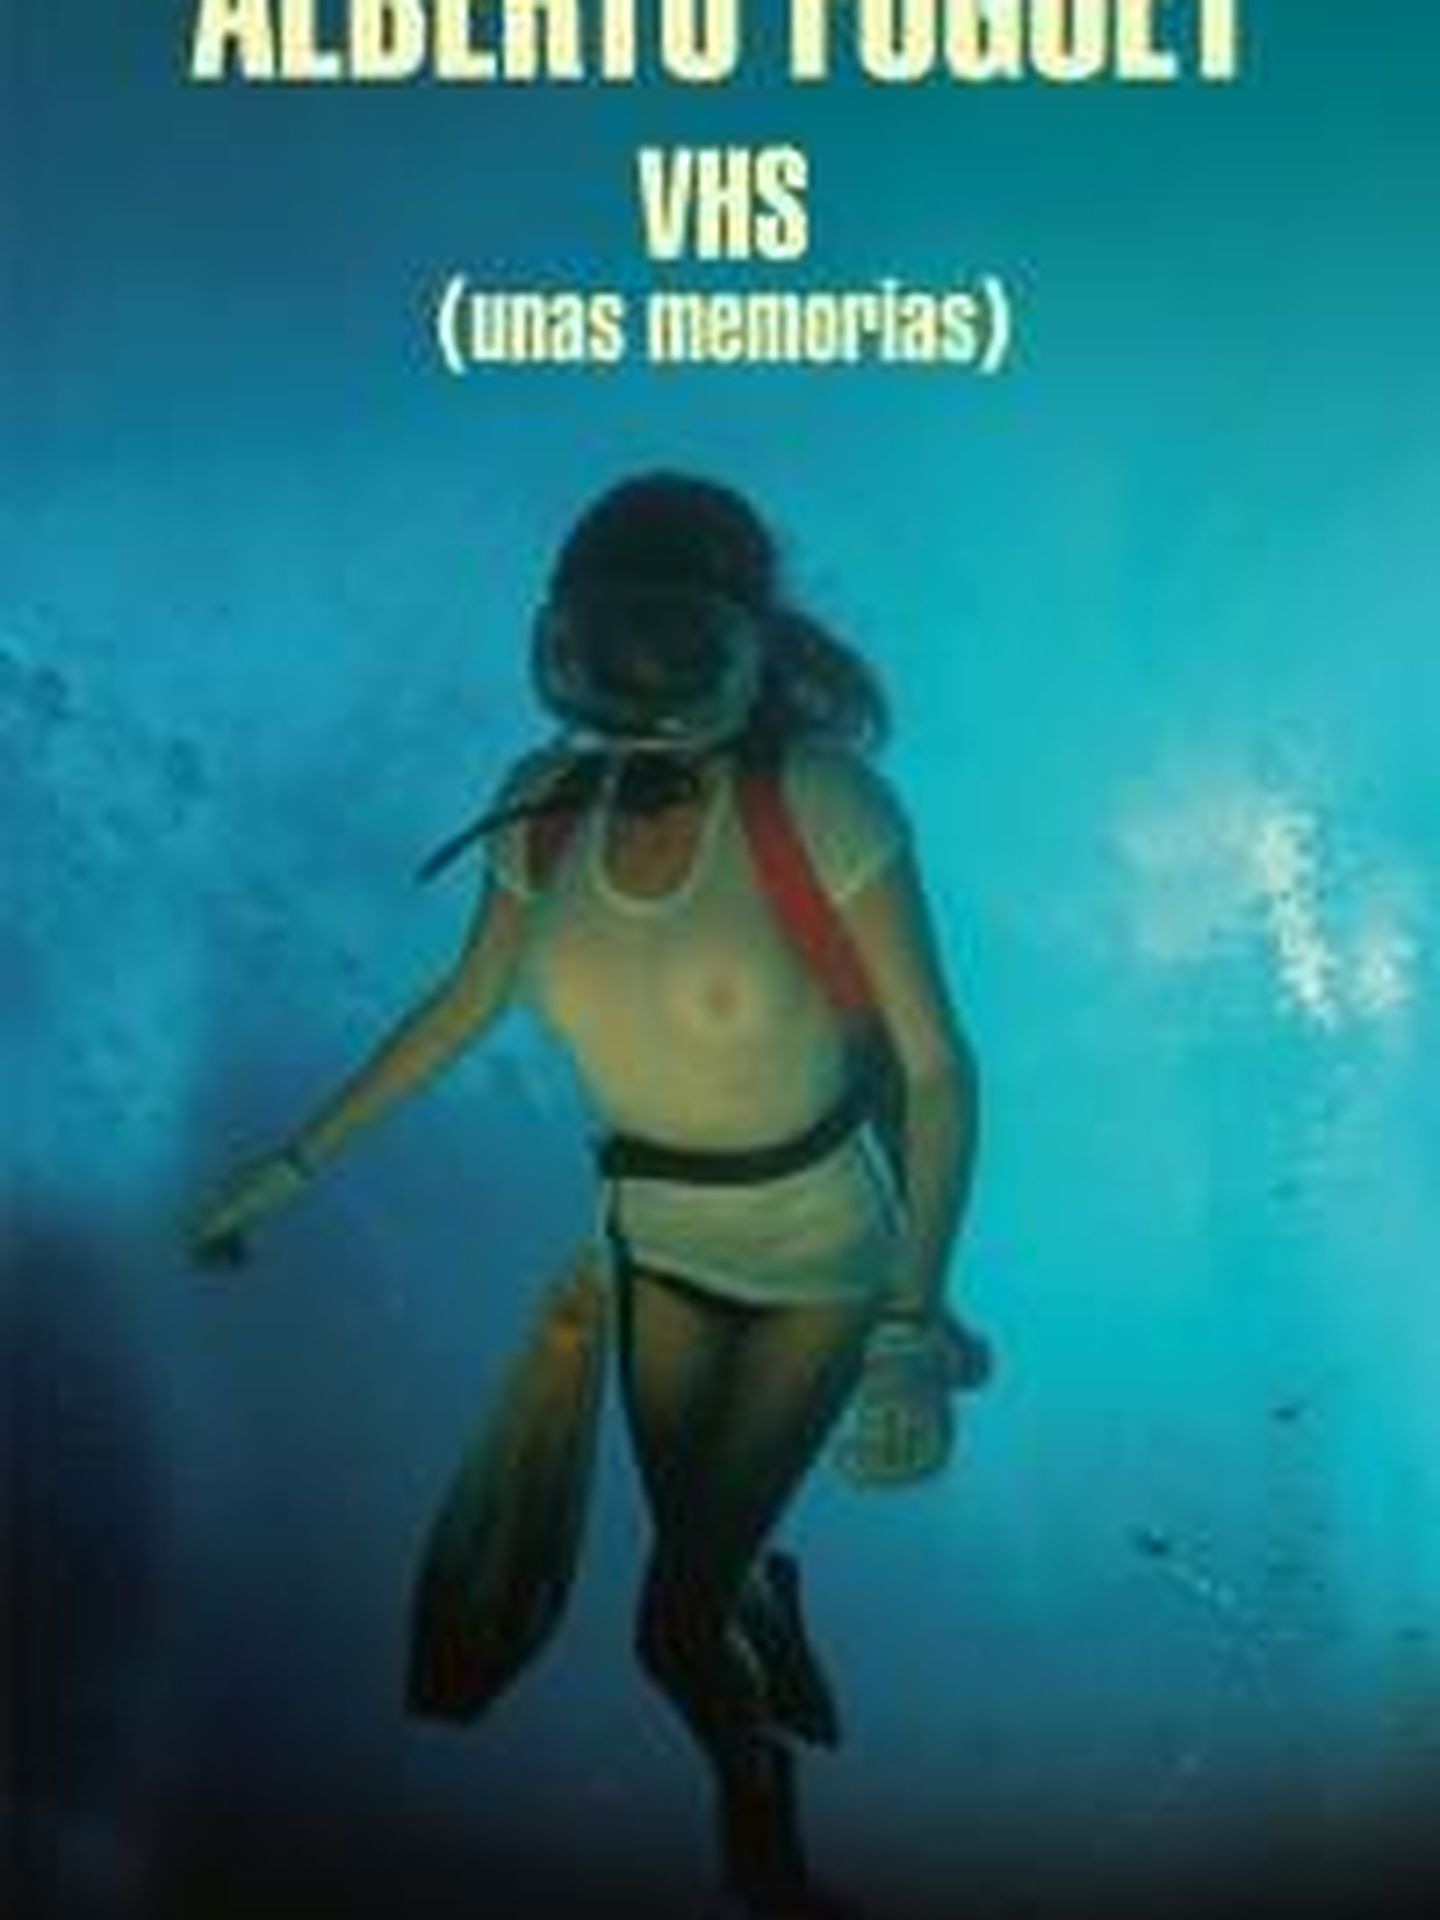 'VHS: Unas memorias'.